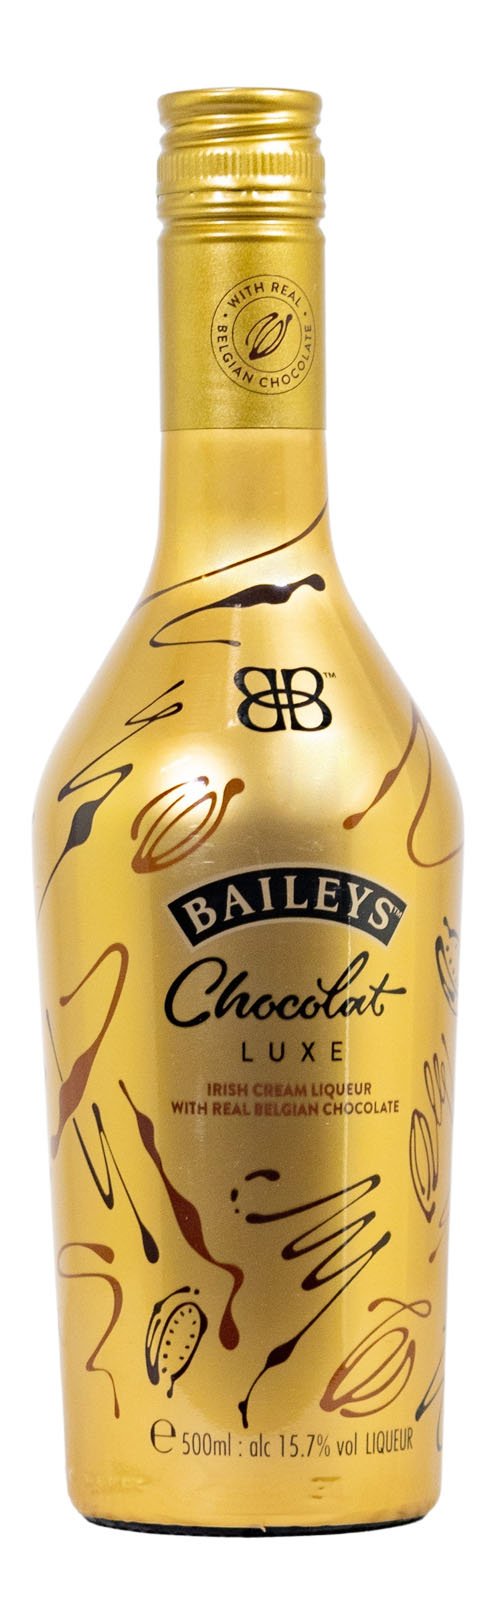 Baileys Chocolat Luxe Gold Edition kaufen günstig (0,5L)